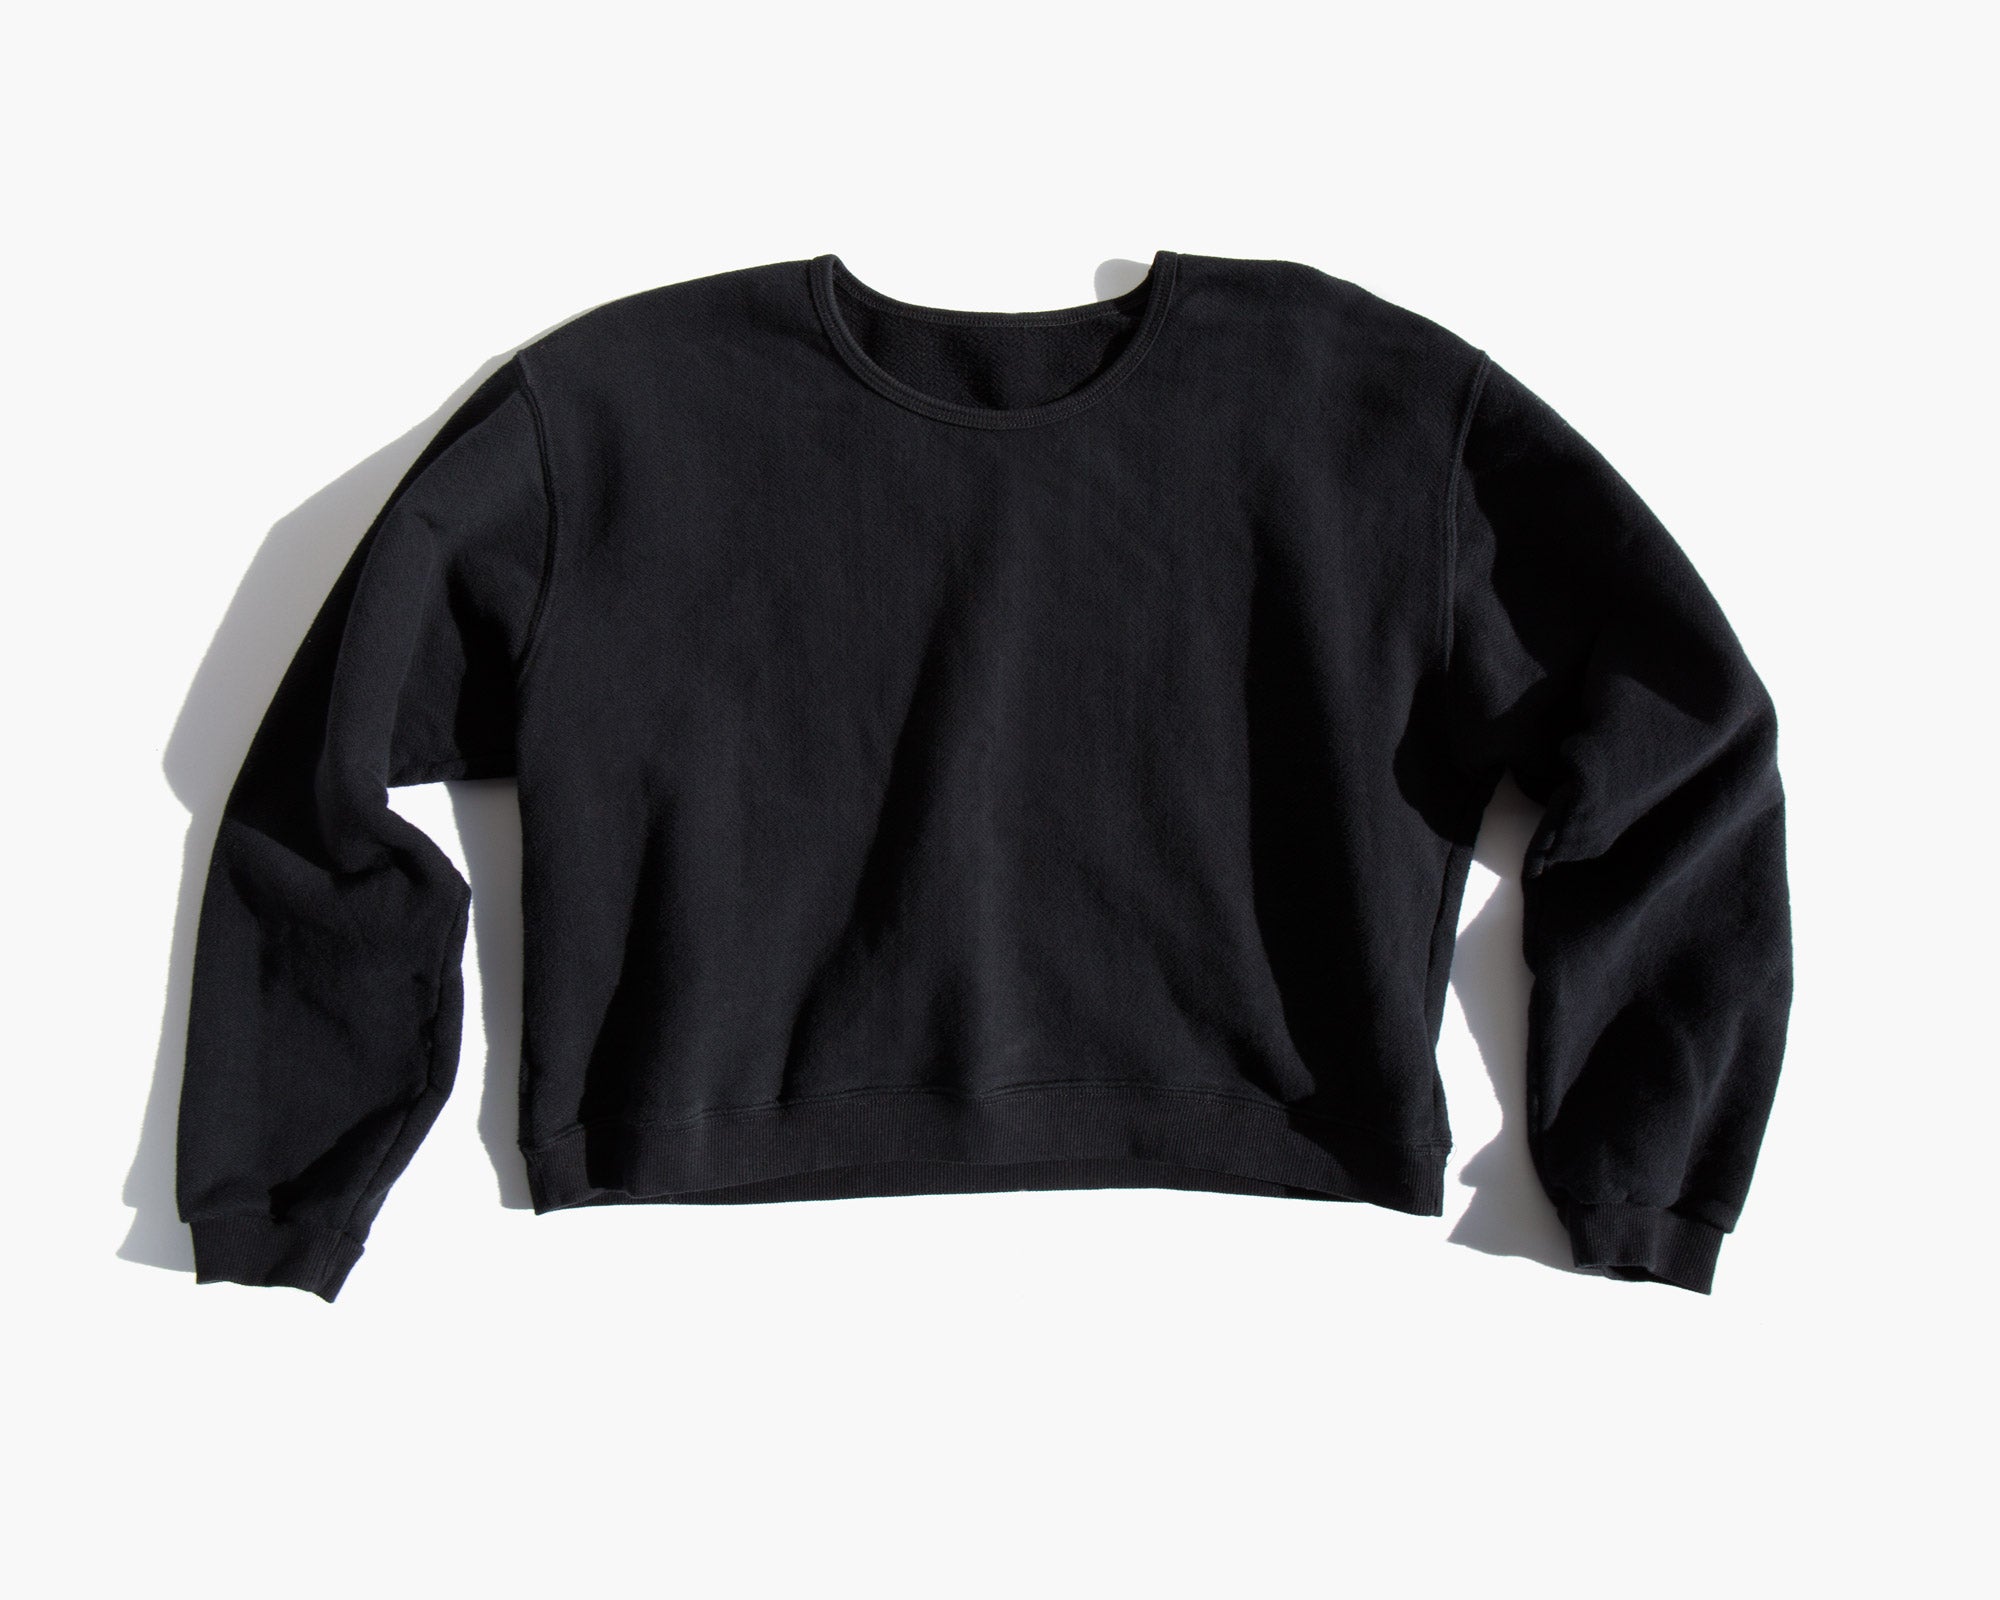 The Crop Sweatshirt Black Herringbone